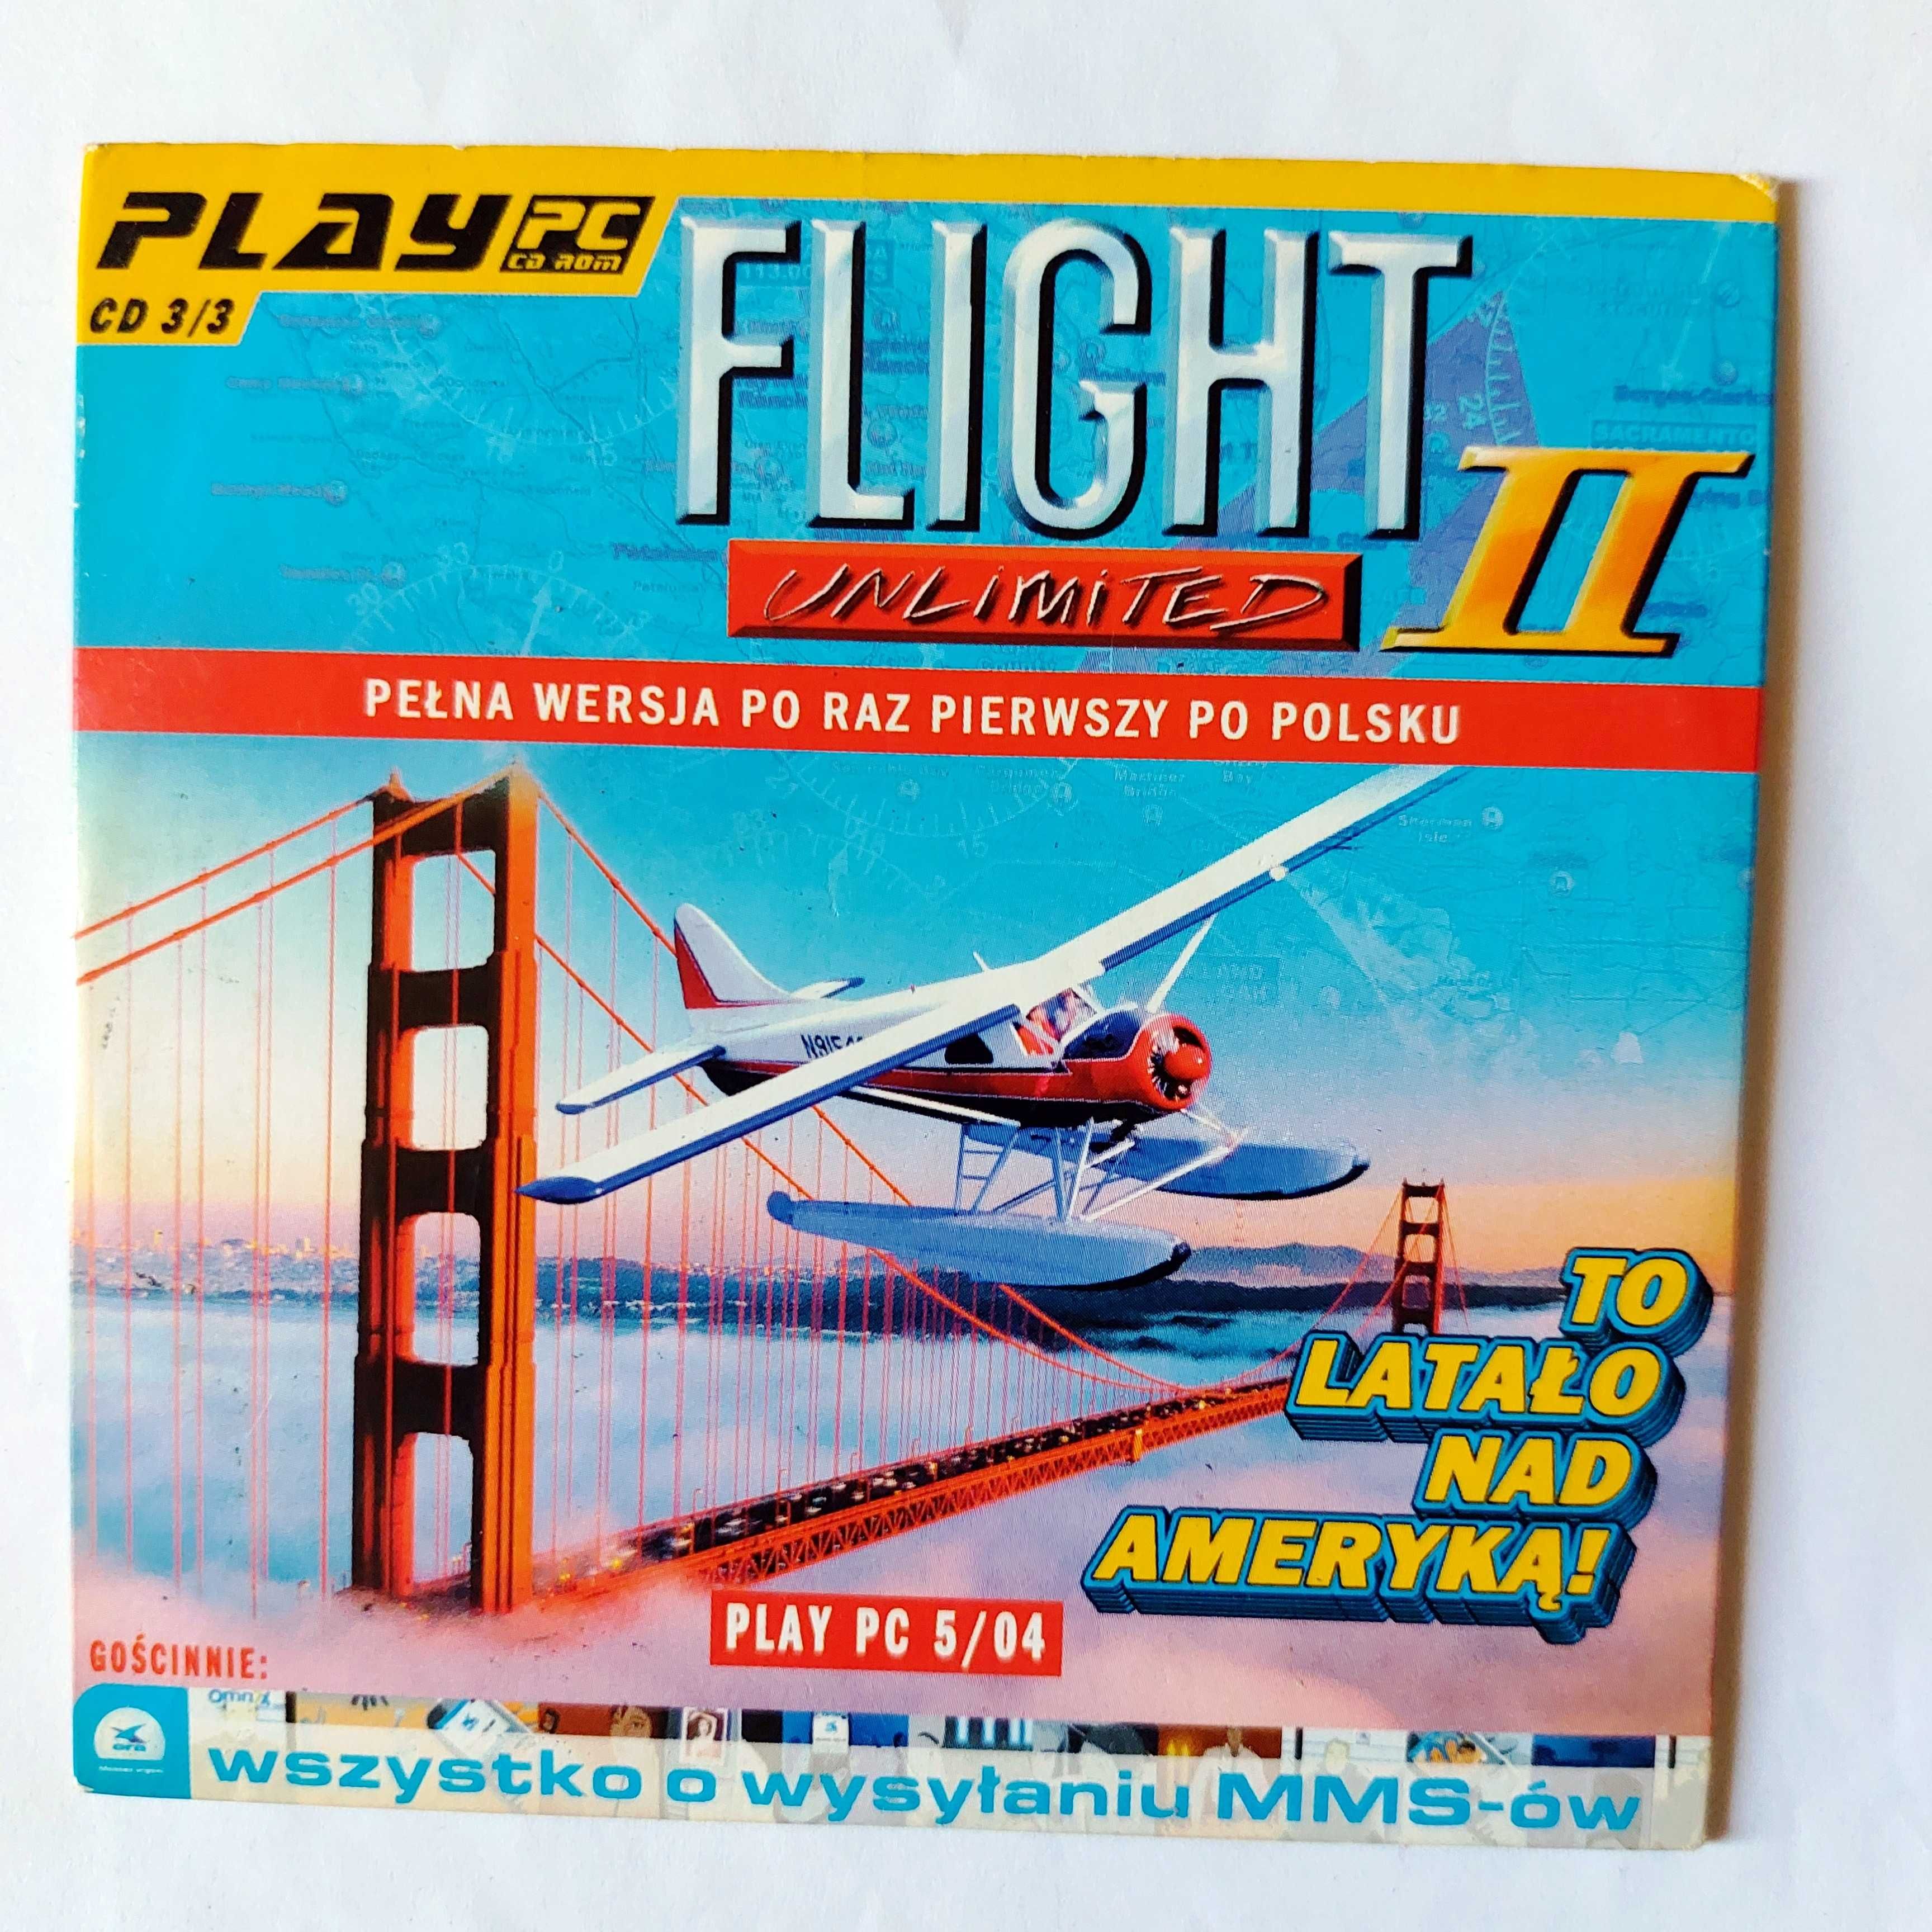 FLIGHT UNLIMITED II | to latało nad Ameryką | gra po polsku na PC